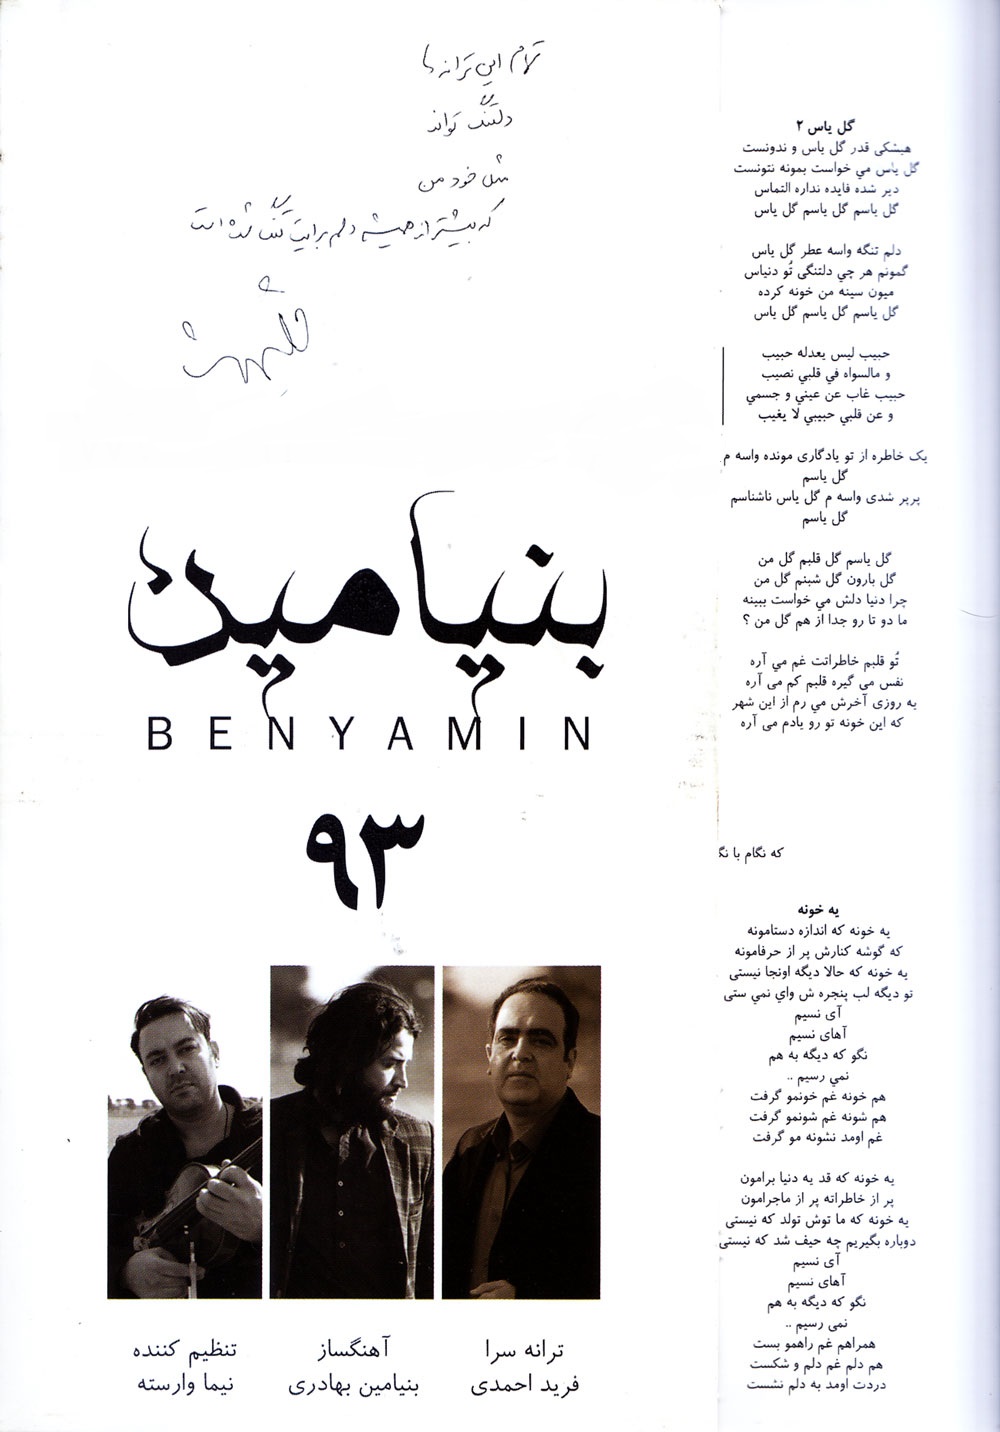 دانلود آلبوم جدید بنیامین بهادری به نام 93